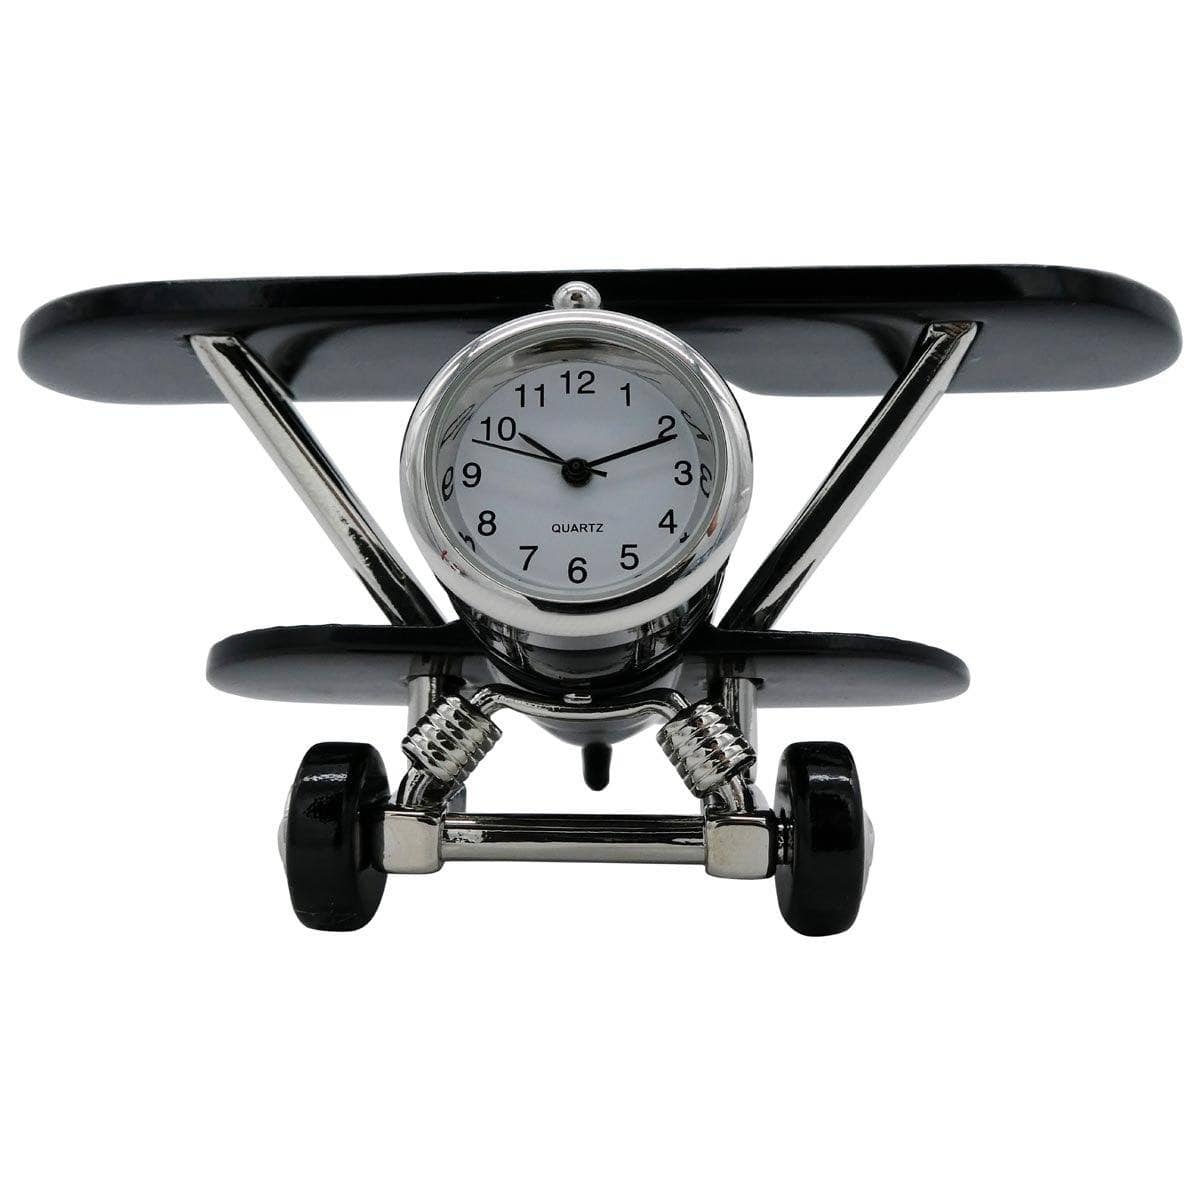 Pilot Toys Black Biplane Desk Clock